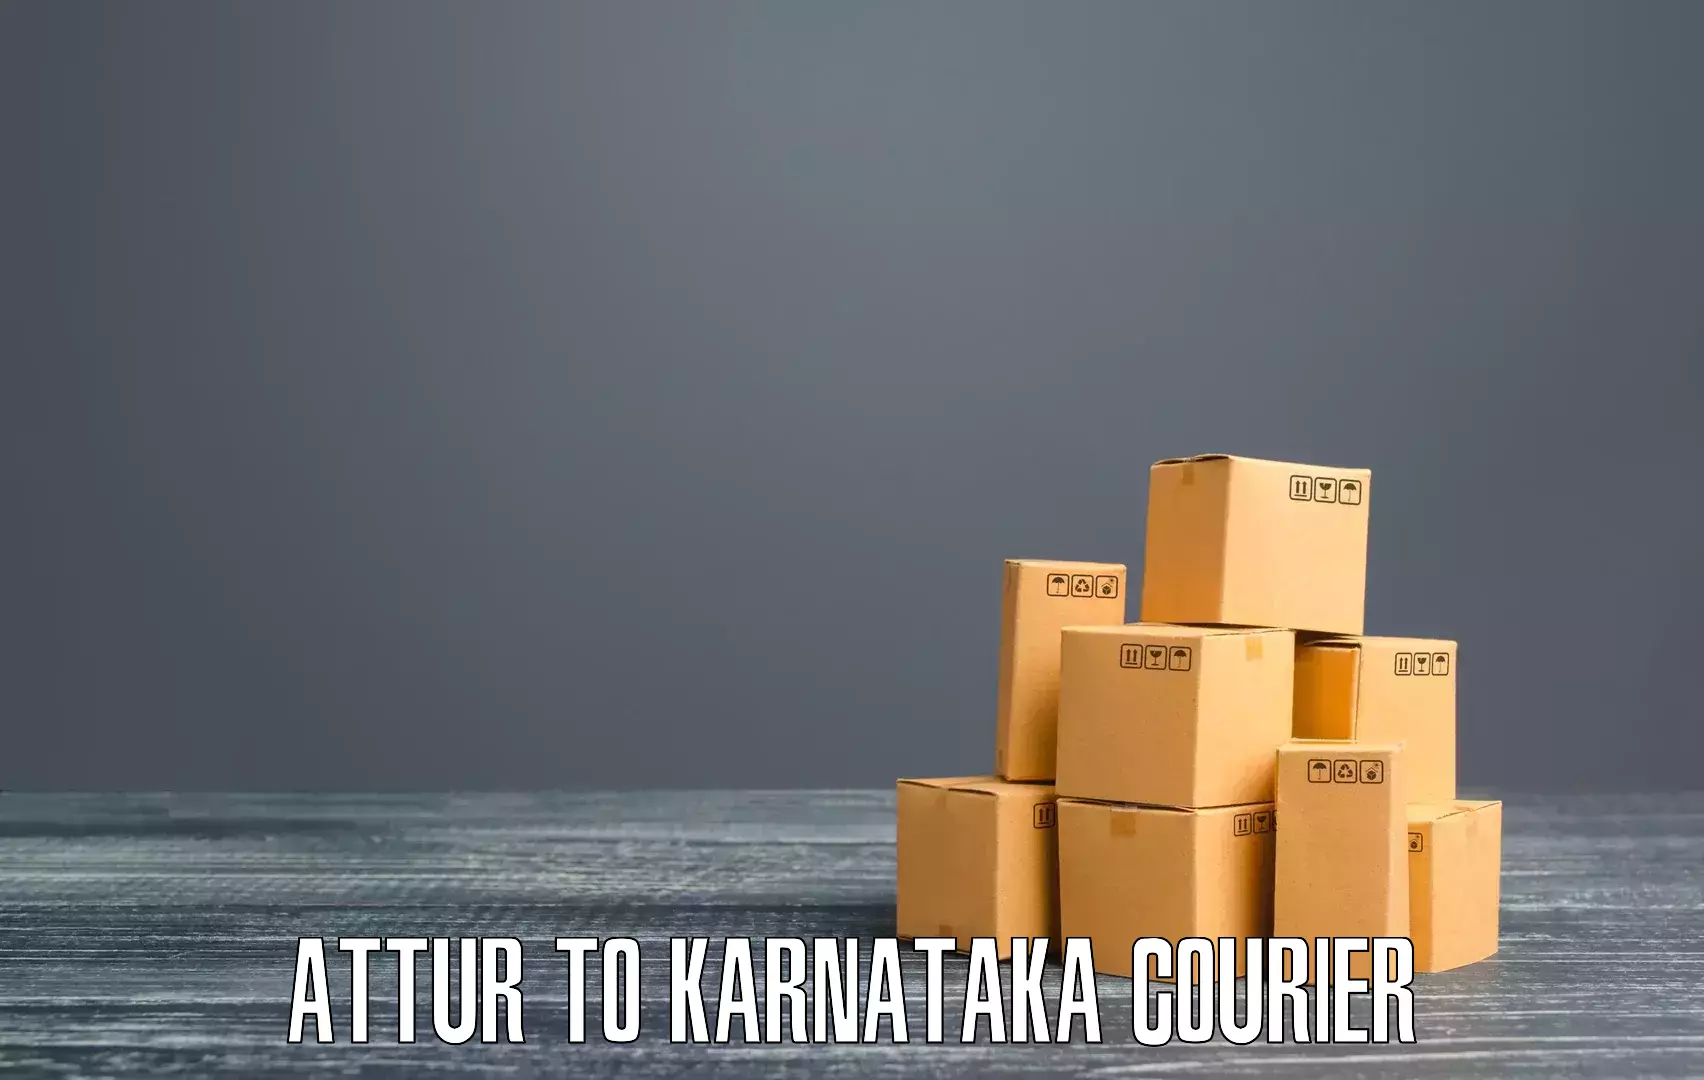 Express logistics service Attur to Karnataka